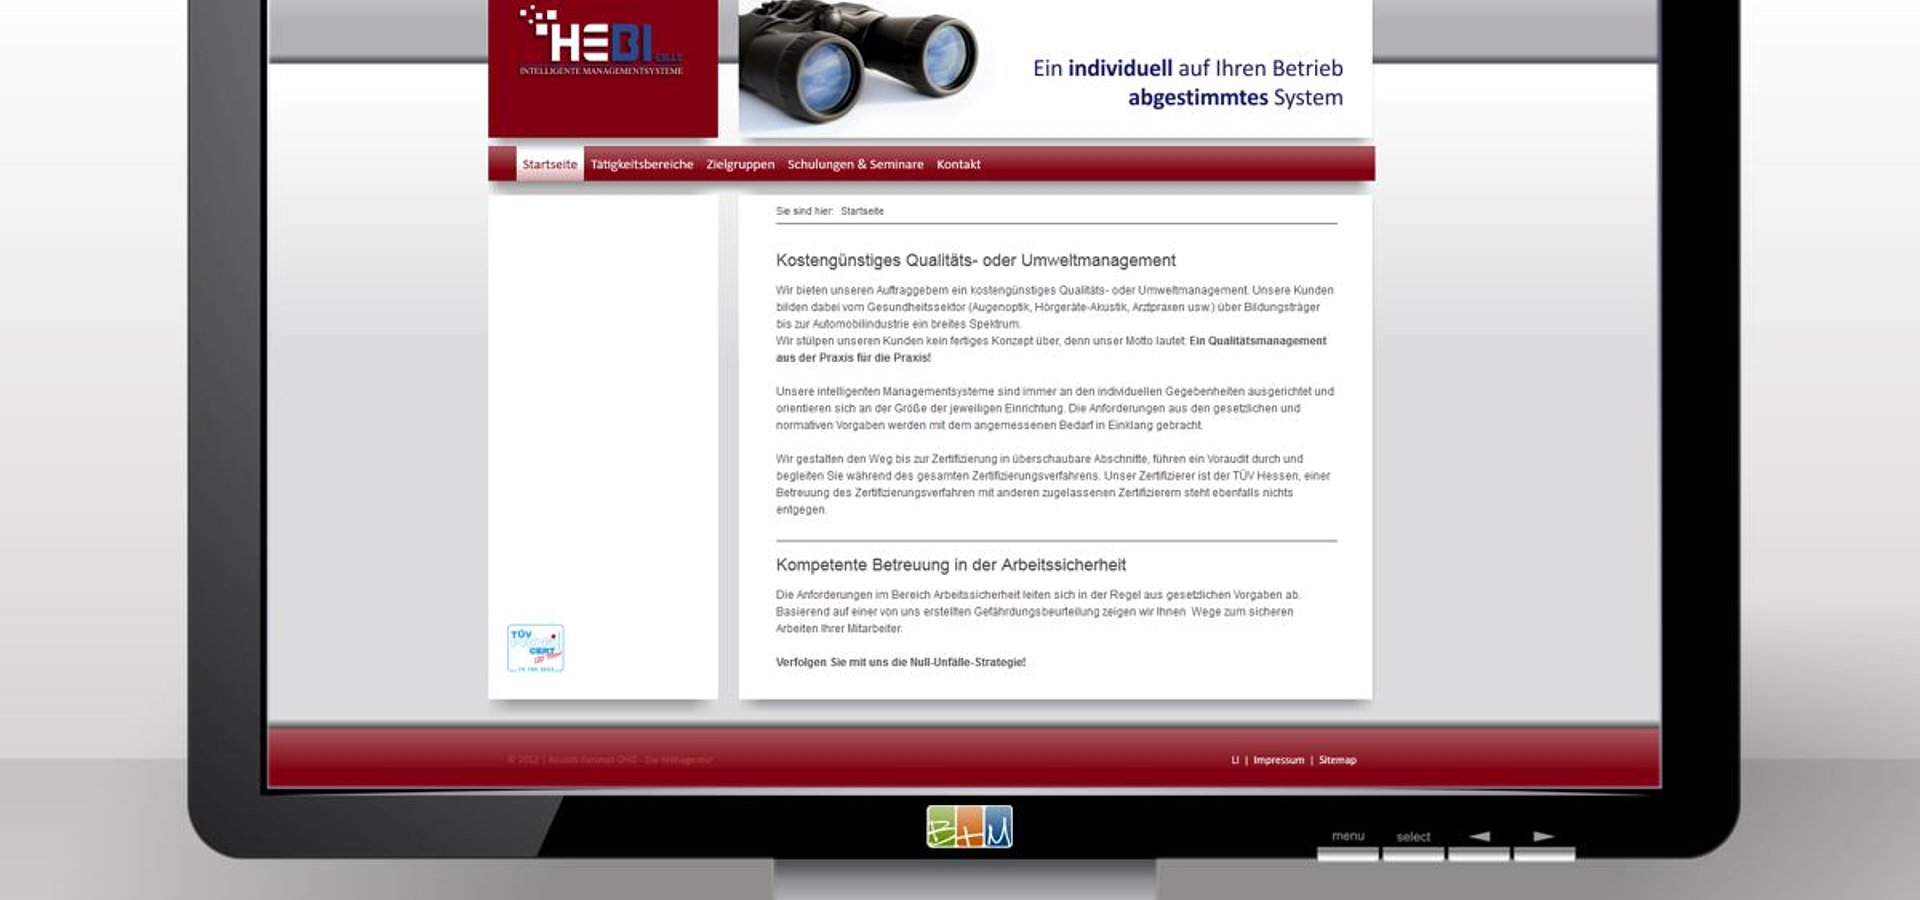 Webdesign: Webdesign für Hebi-Celle GbR / 2011